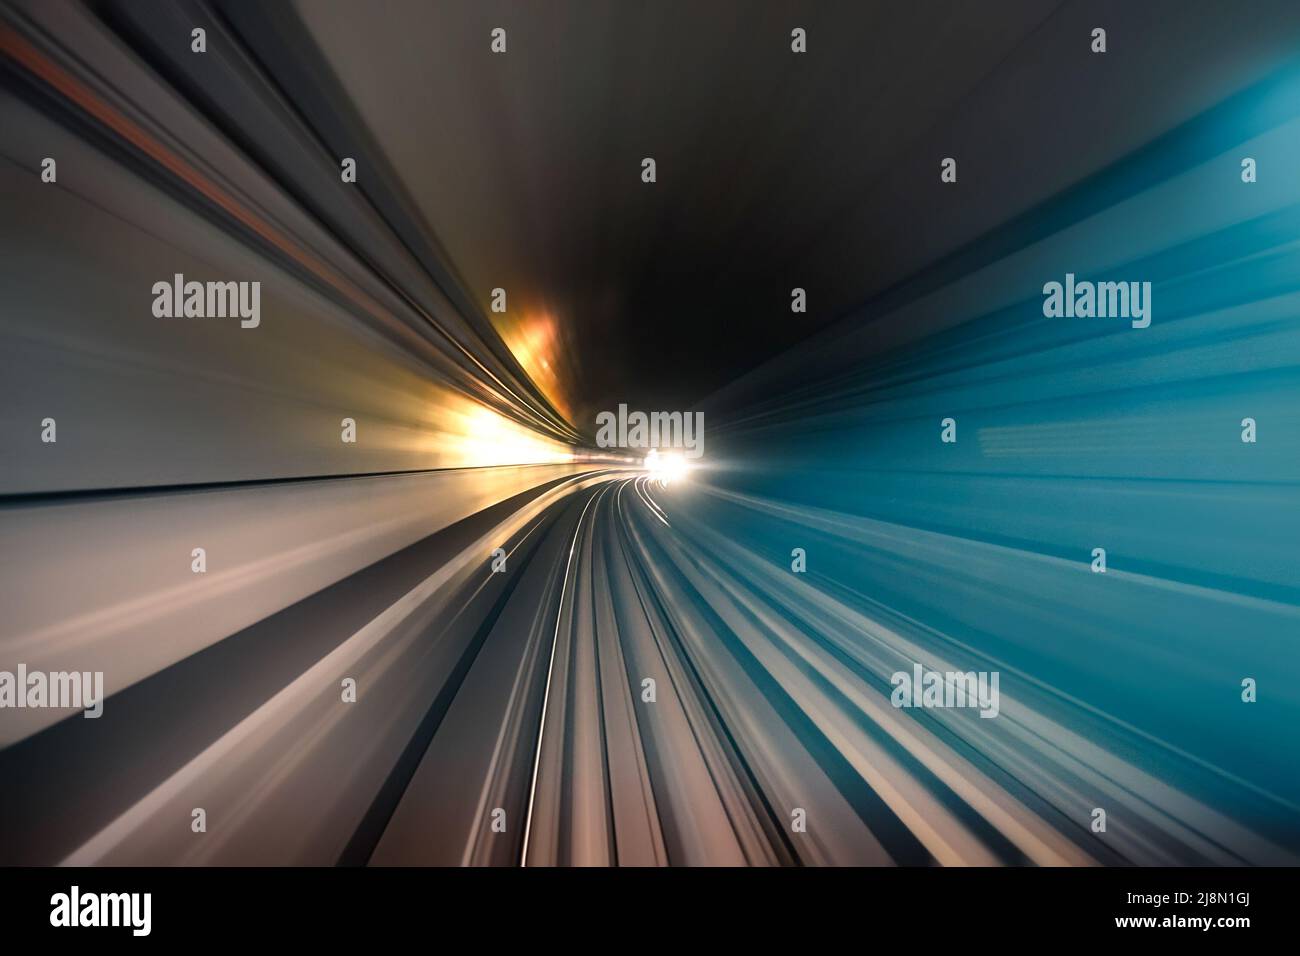 Túnel de metro con vías de luz borrosa en la galería - concepto de transporte subterráneo moderno y conexión - Zoom radial movimiento desenfoque debido a Foto de stock